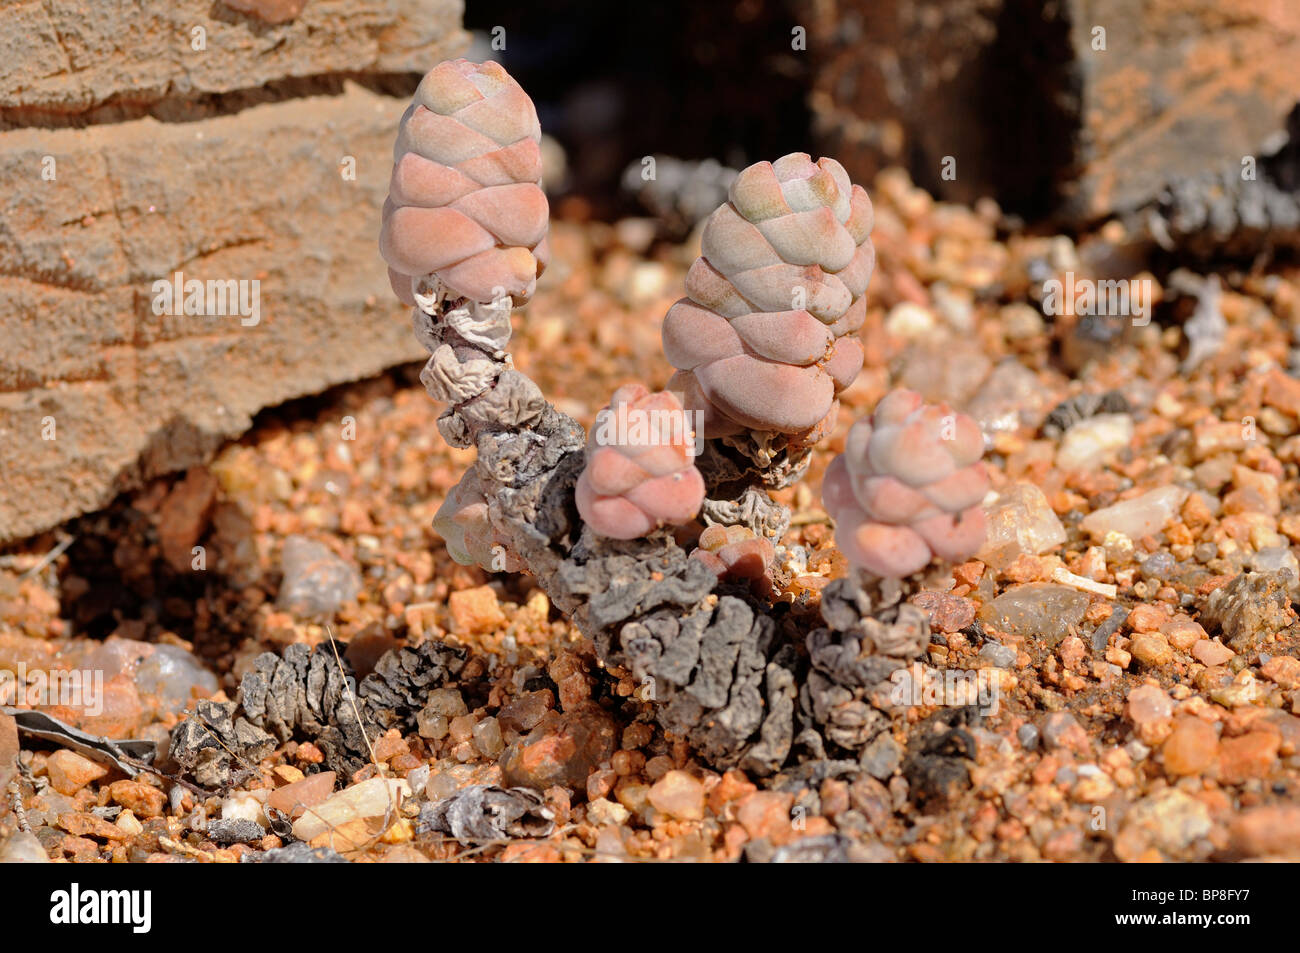 Crassula plegmatoides, Namaqualand, South Africa Stock Photo